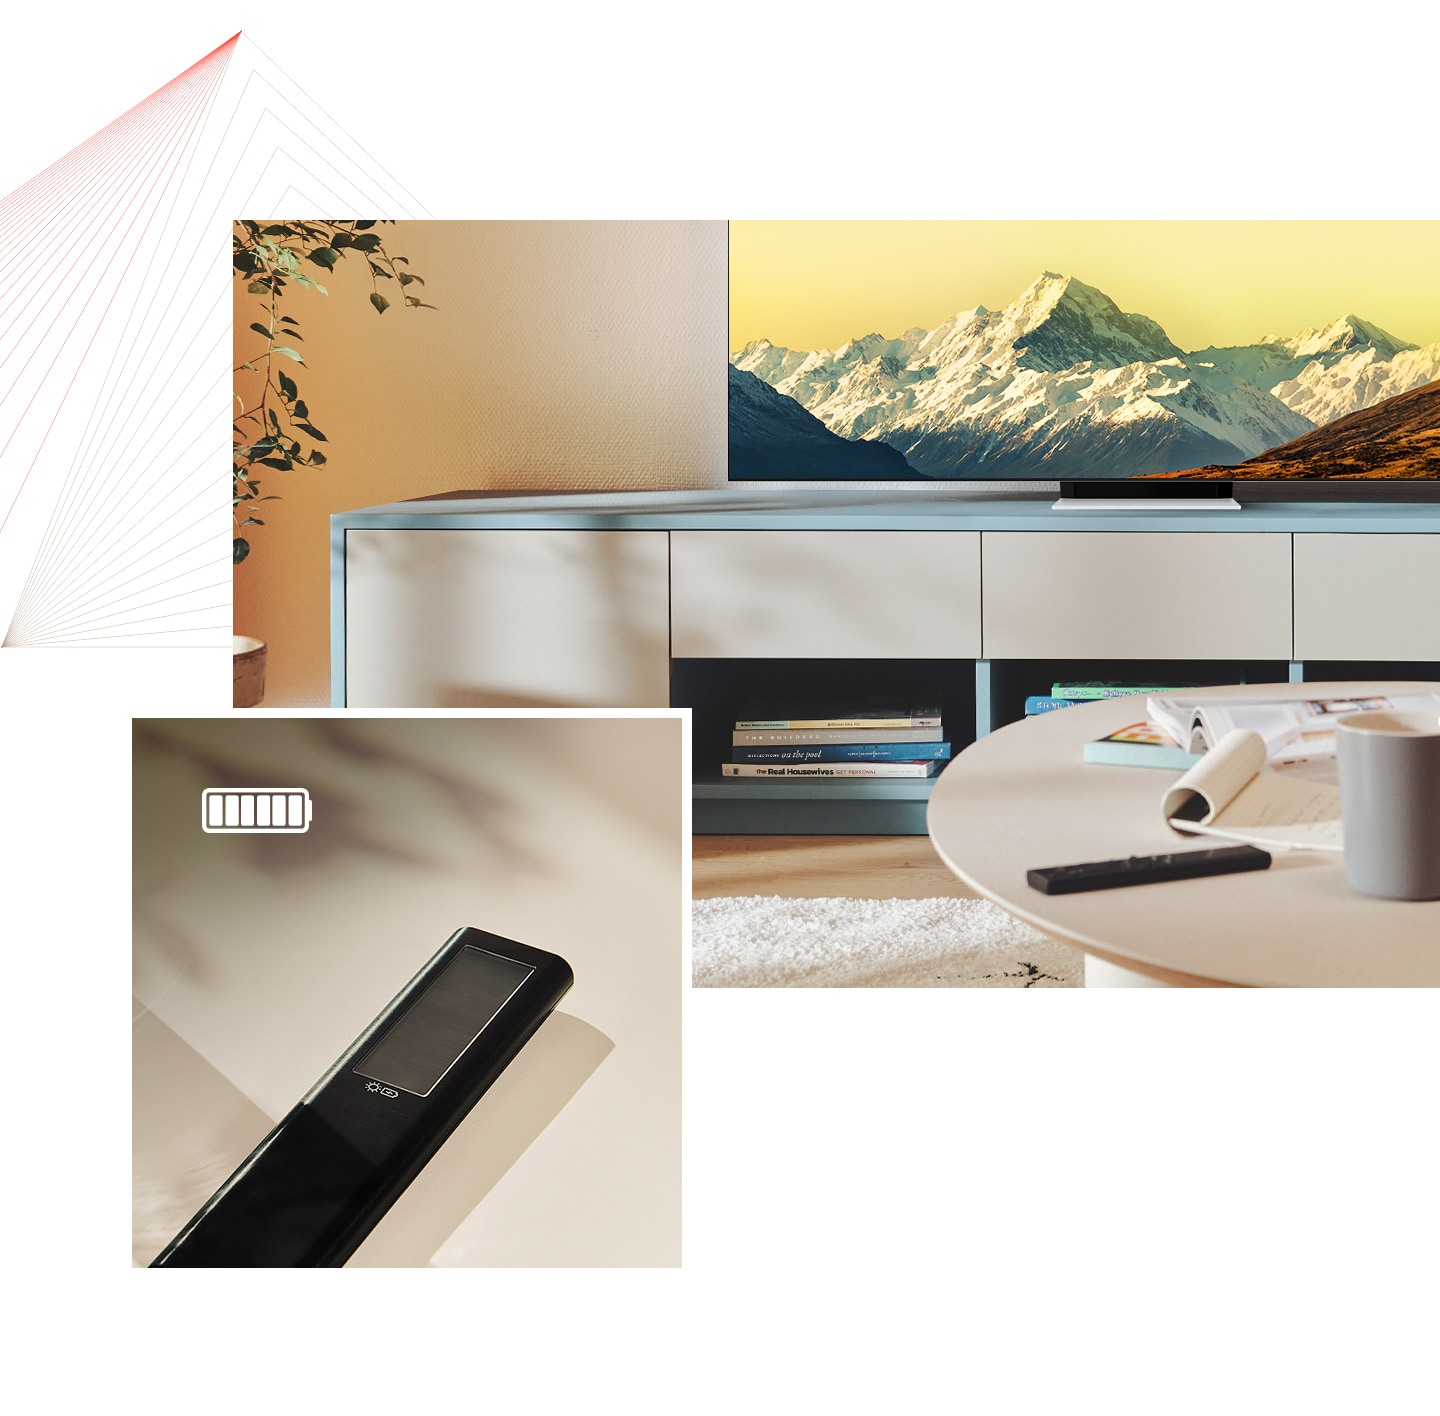 Pirma, „SolarCell Remote“ yra ant stalo šviesiame kambaryje, kuriame taip pat rodomas „Neo QLED“. Antra, „SolarCell Remote“ nuotolinio valdymo pultelis iš arti rodomas su visiškai įkrauto akumuliatoriaus piktograma.